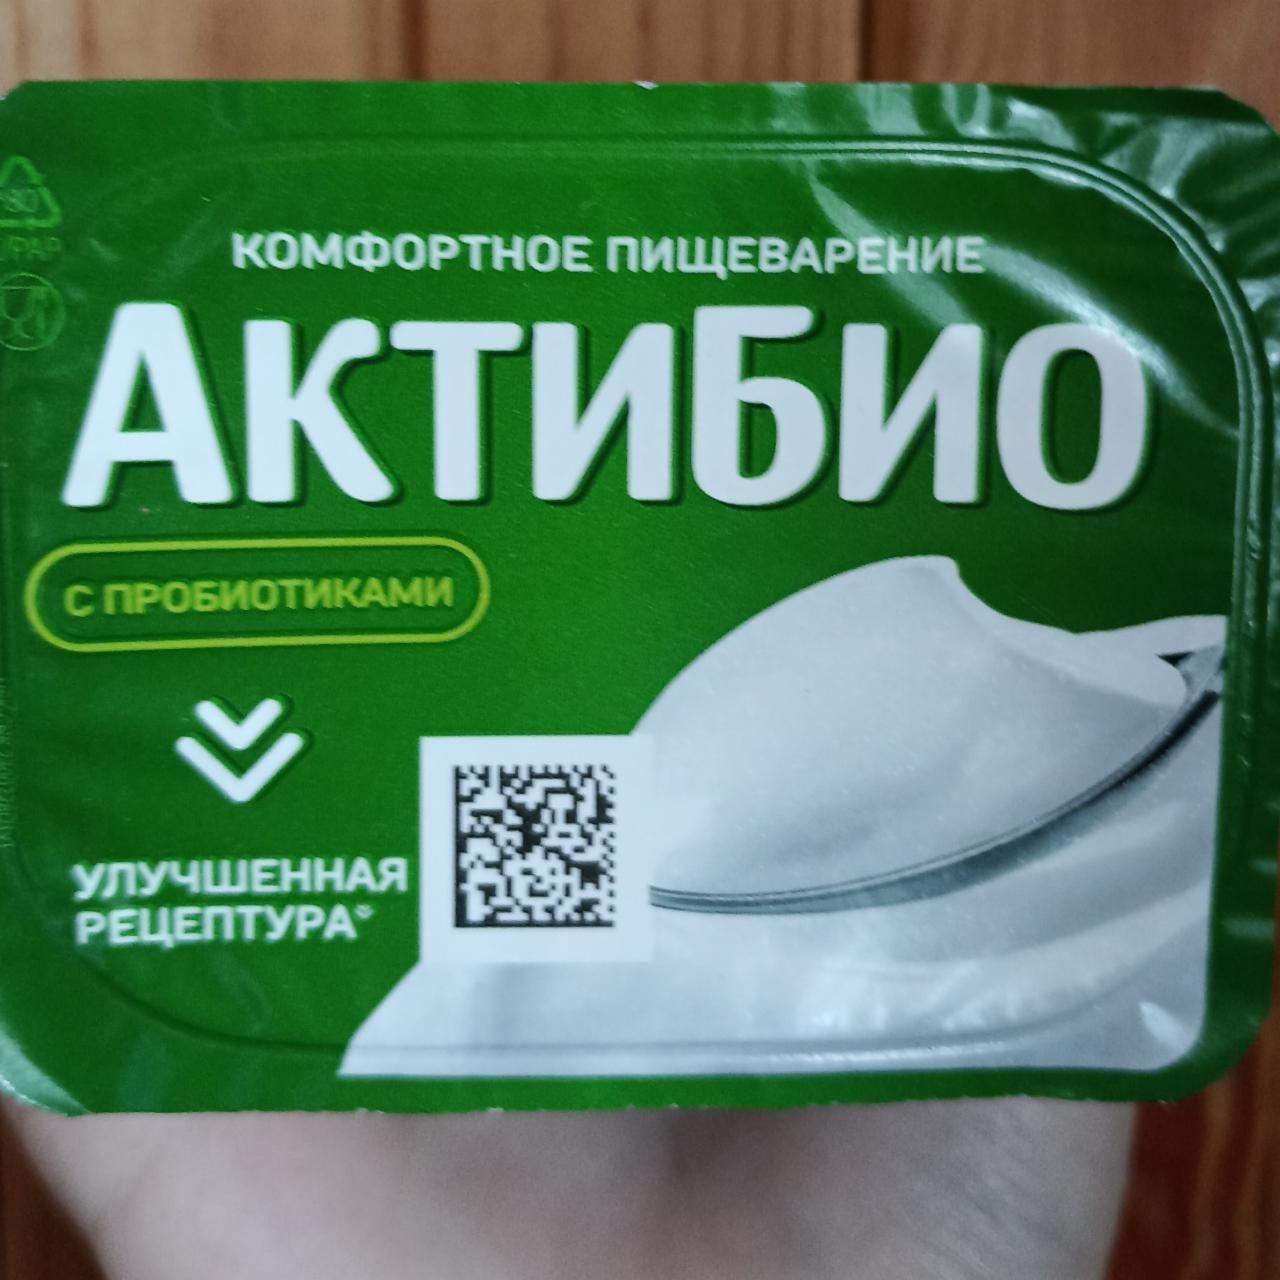 Фото - Био йогурт с пробиотиками натуральный ложковой Актибио Данон Россия Московская область